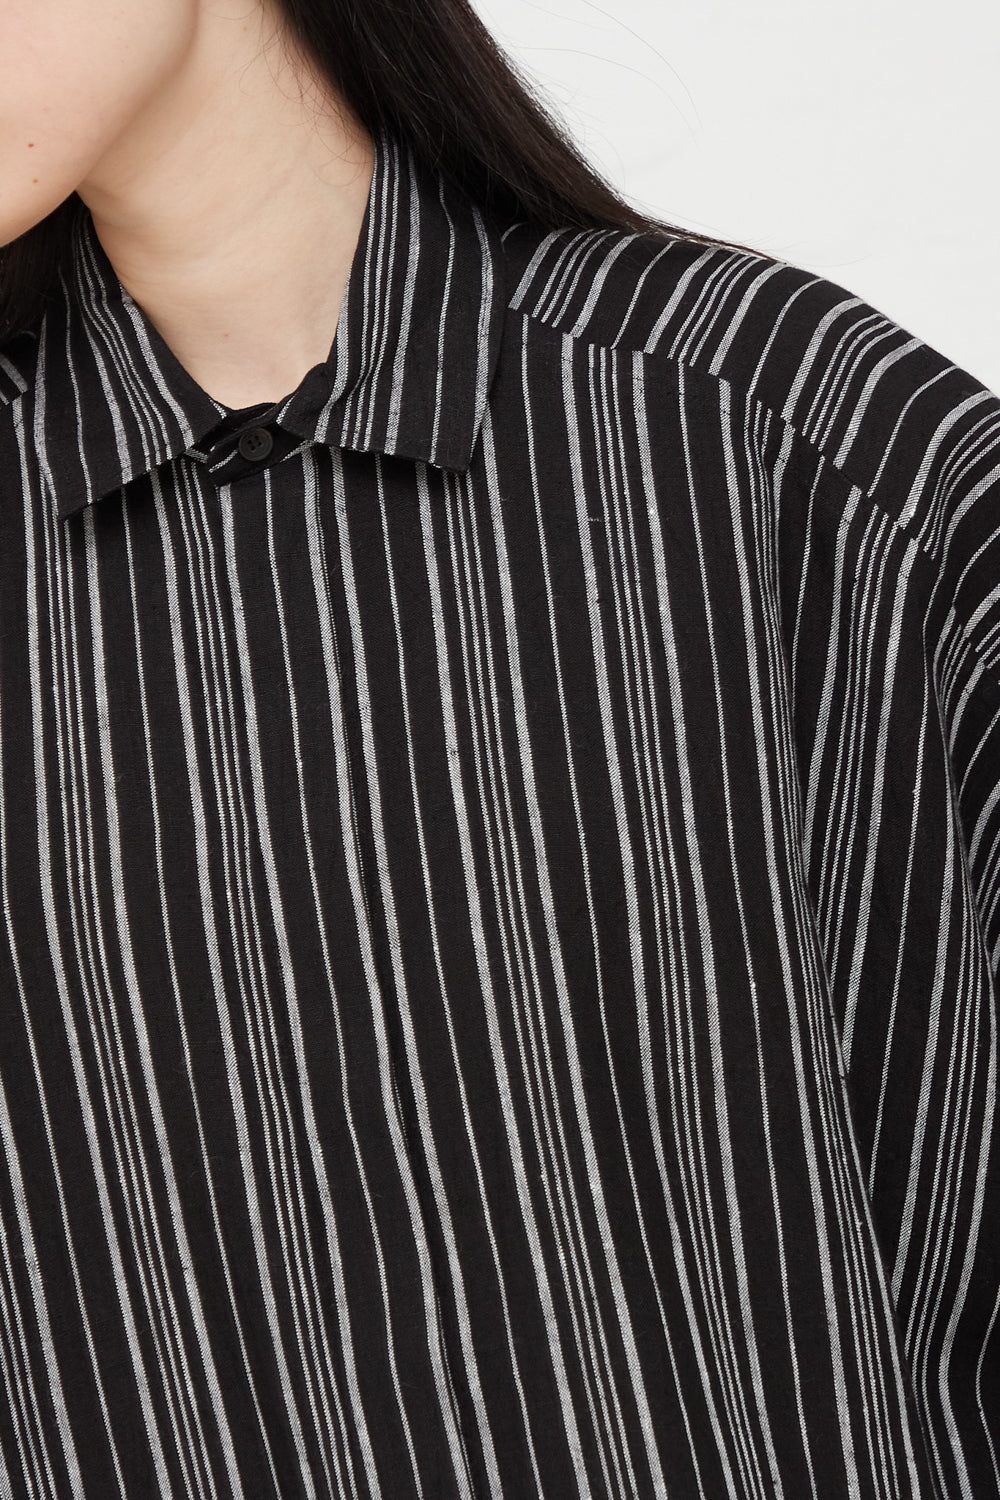 Jan-Jan Van Essche - Linen Batist Shirt in Contrast Stripe